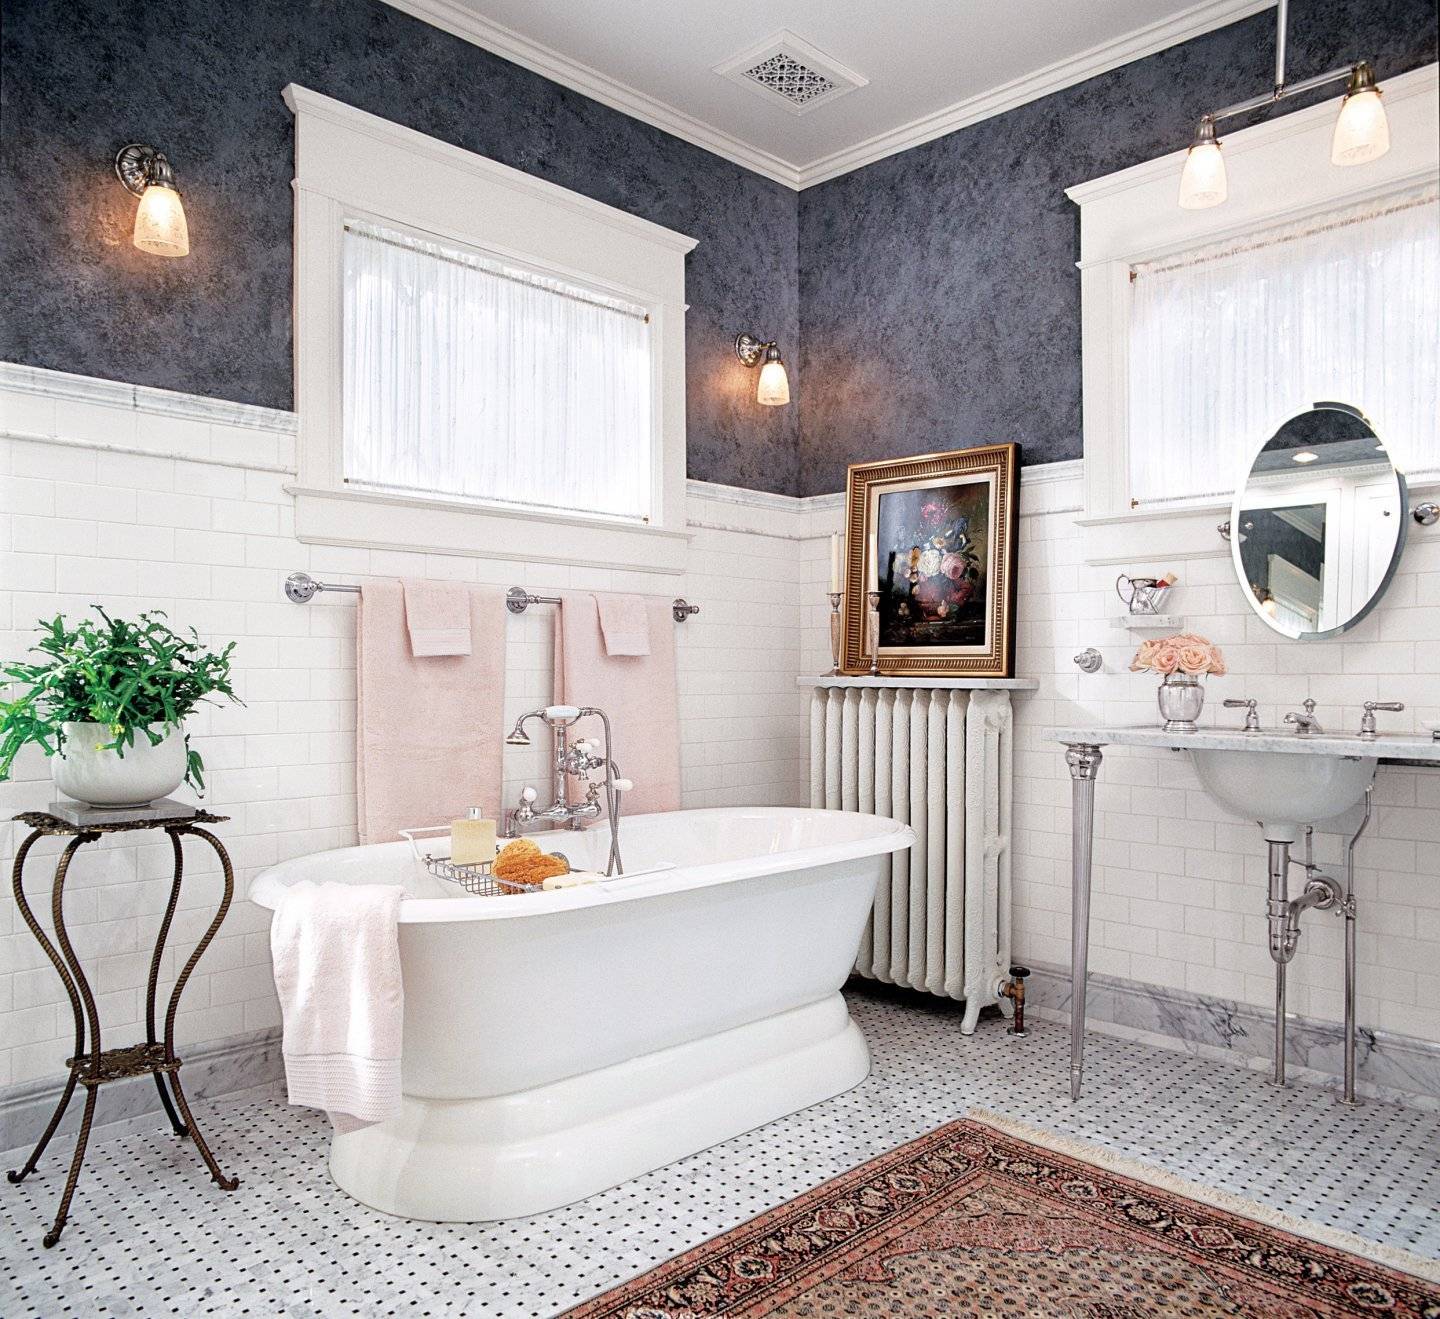 Ванная комната в стиле ретро: сантехника, мебель, раковина